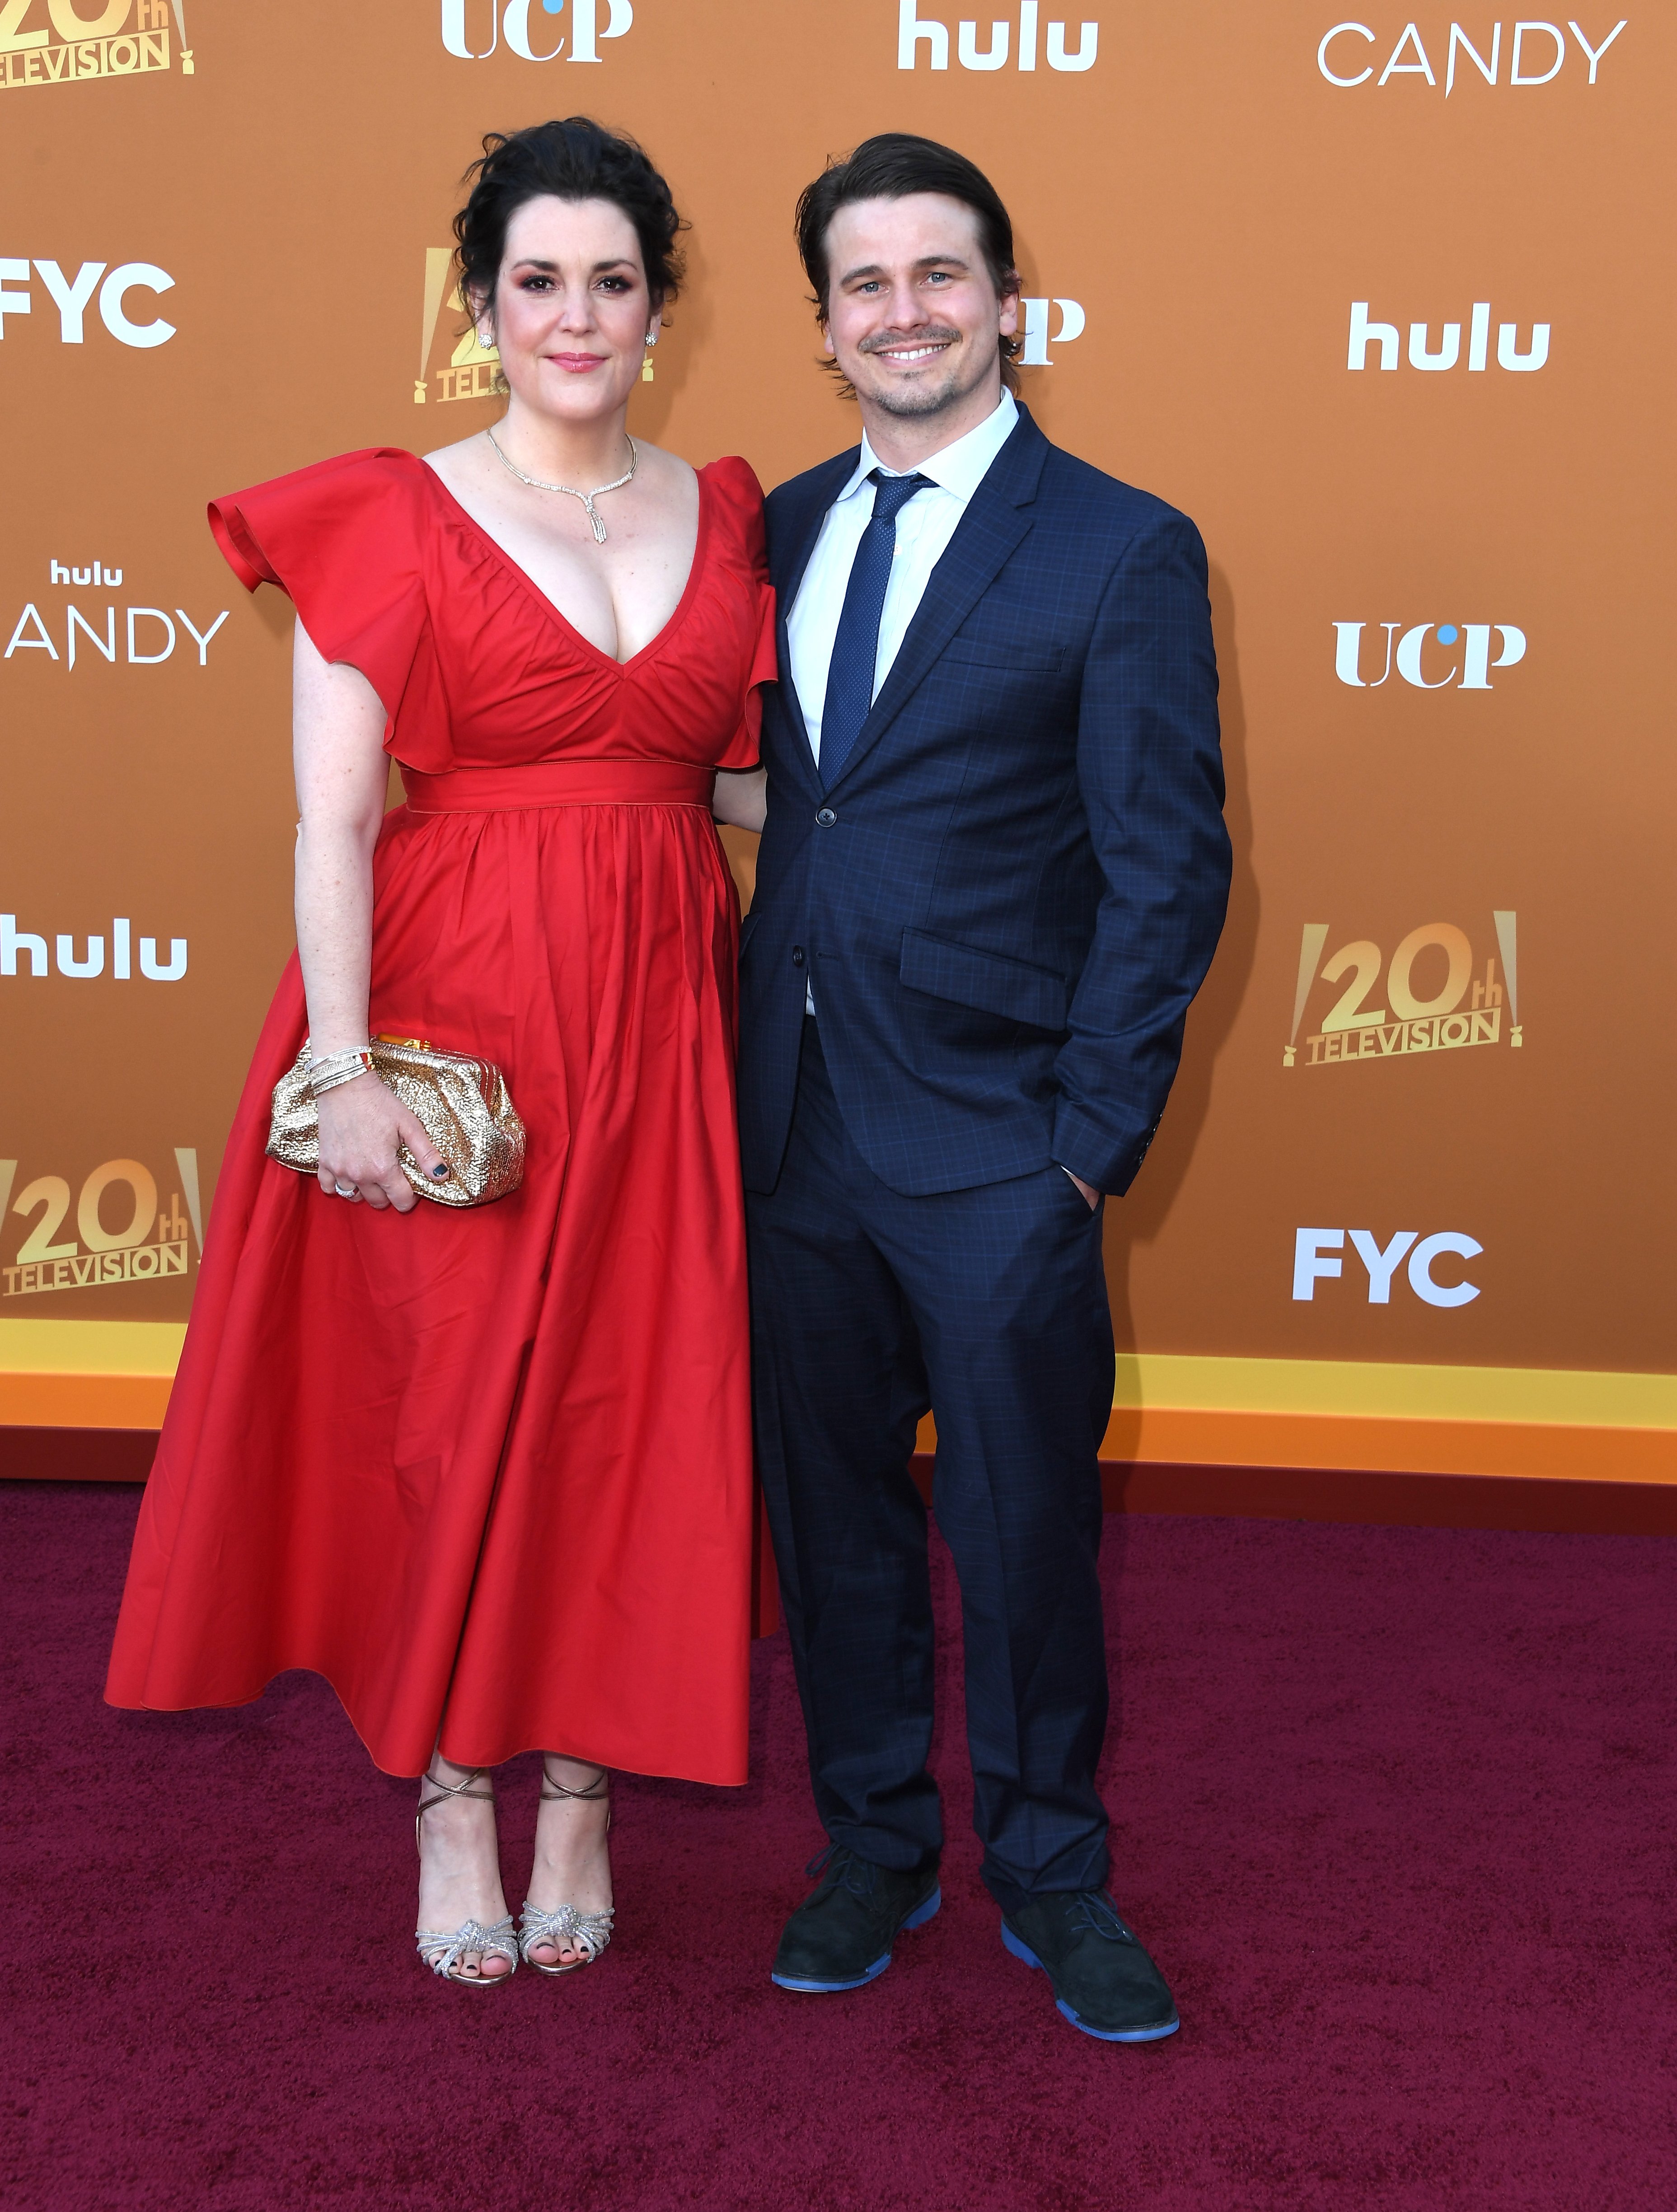 Melanie Lynskey y Jason Ritter en el evento FYC Premiere de Los Ángeles para "Candy" de Hulu, el 9 de mayo de 2022 en el Teatro El Capitan, en Los Ángeles, California. | Foto: Getty Images